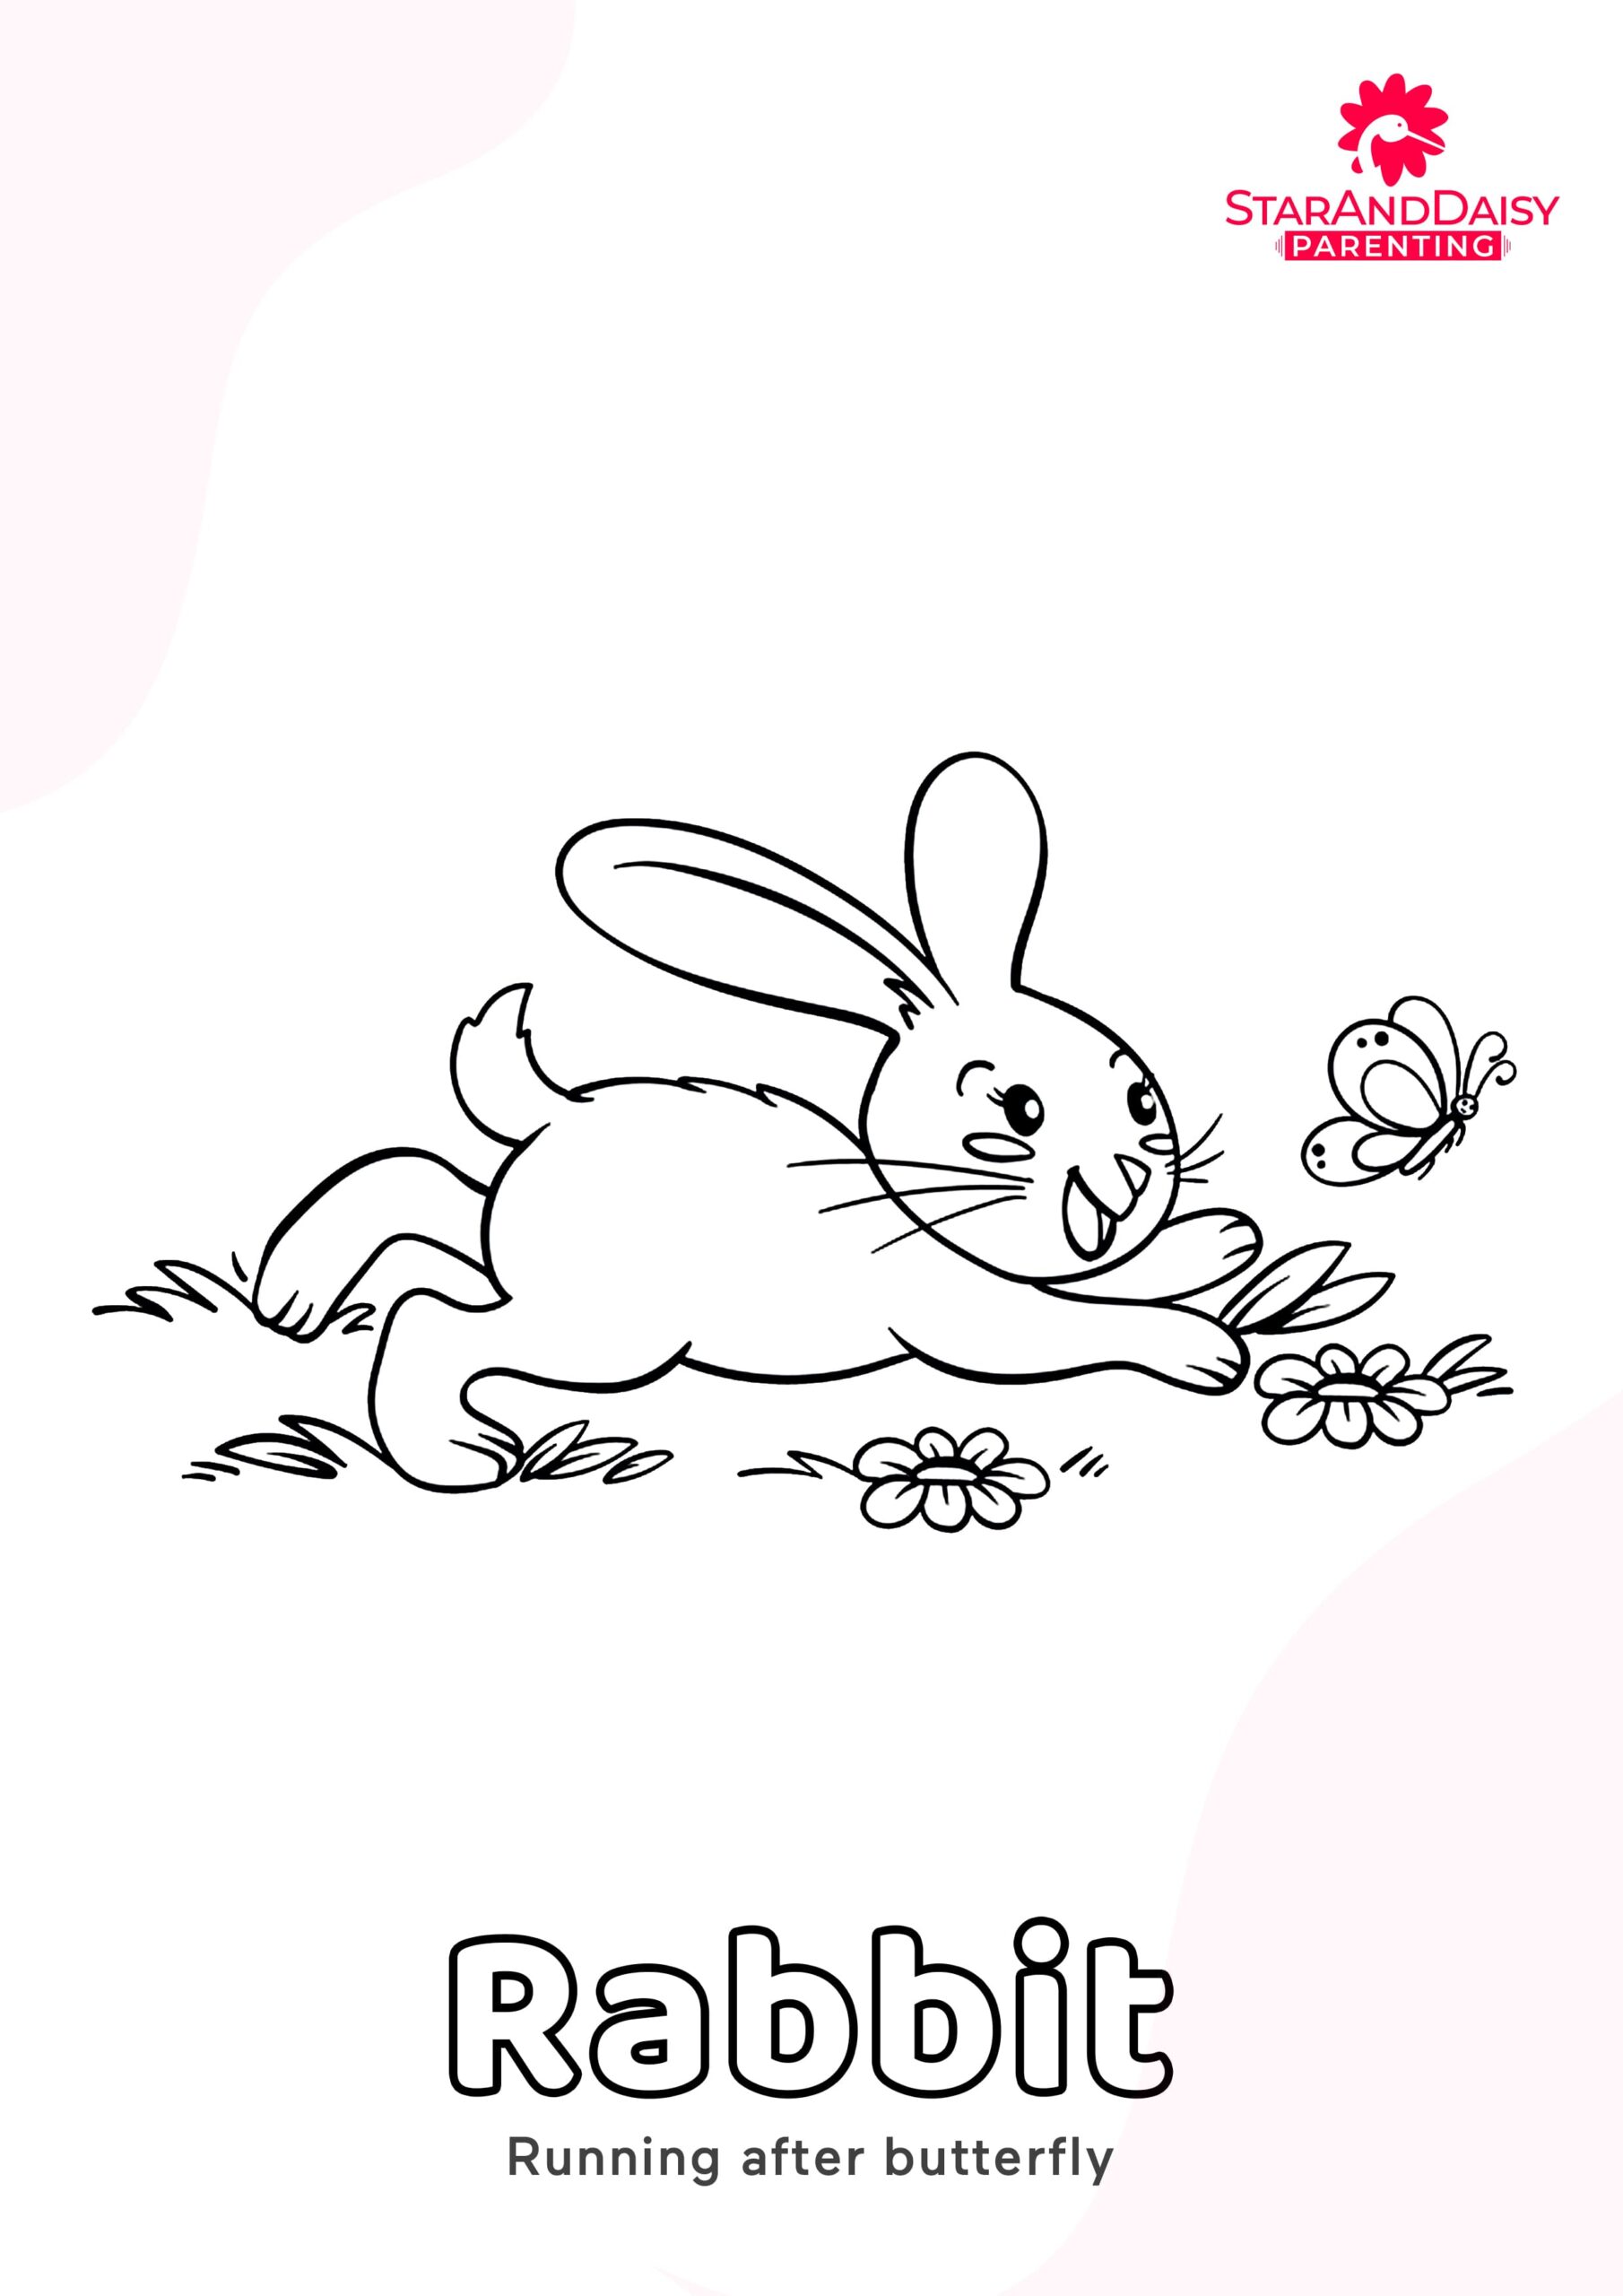 Rabbit-3